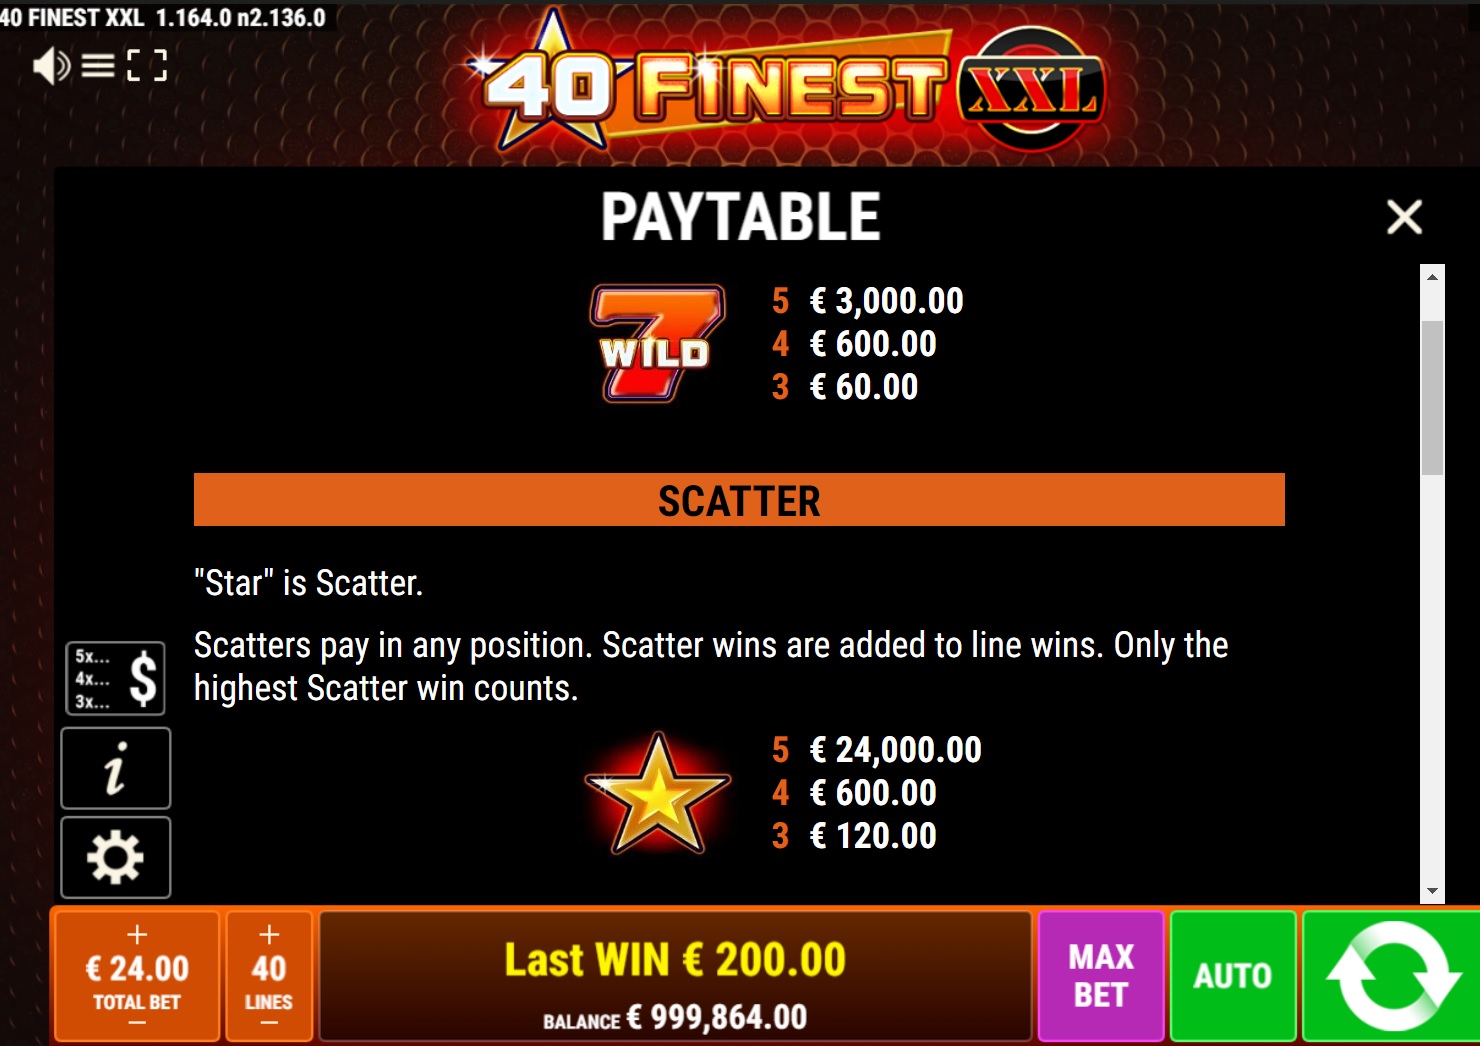 40 Finest XXL Slot Paytable